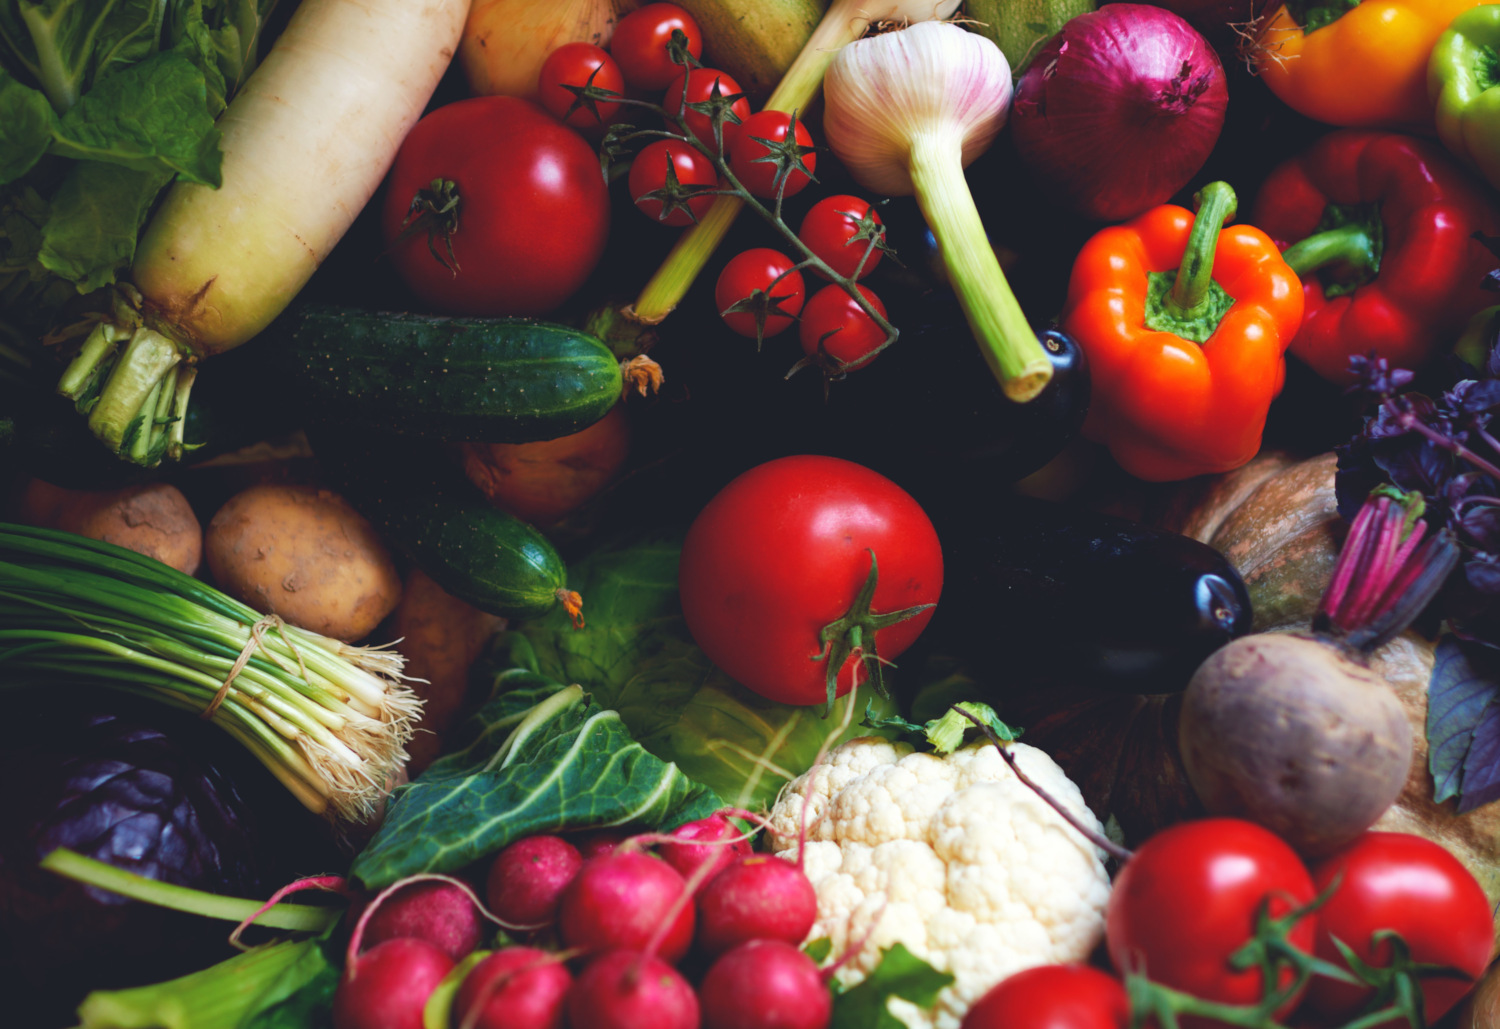 食物的真相,大卫·凯兹博士的新书,总统真正的健康计划,挖掘通过谎言和时尚健康饮食和科学显示,清楚地向我们表明,位于整个食品和饮食主要是植物最适合你的健康和这个星球。